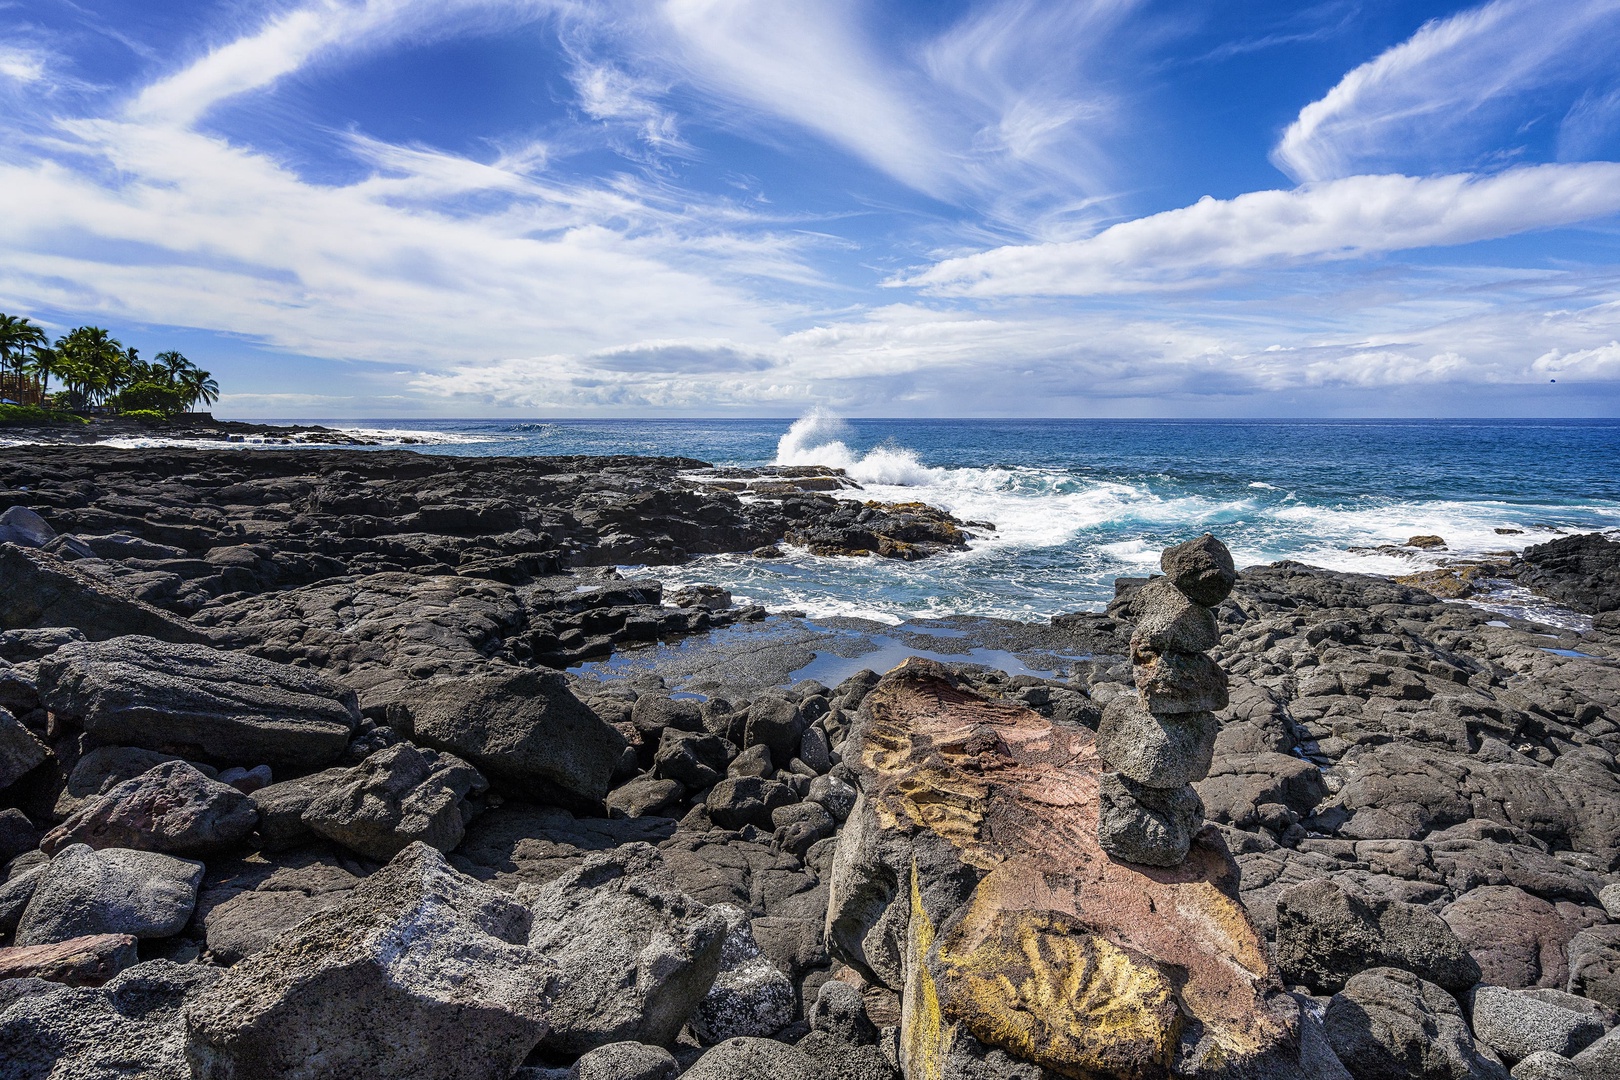 Kailua Kona Vacation Rentals, Kona Makai 2103 - Rocky shoreline to admire the ocean activity